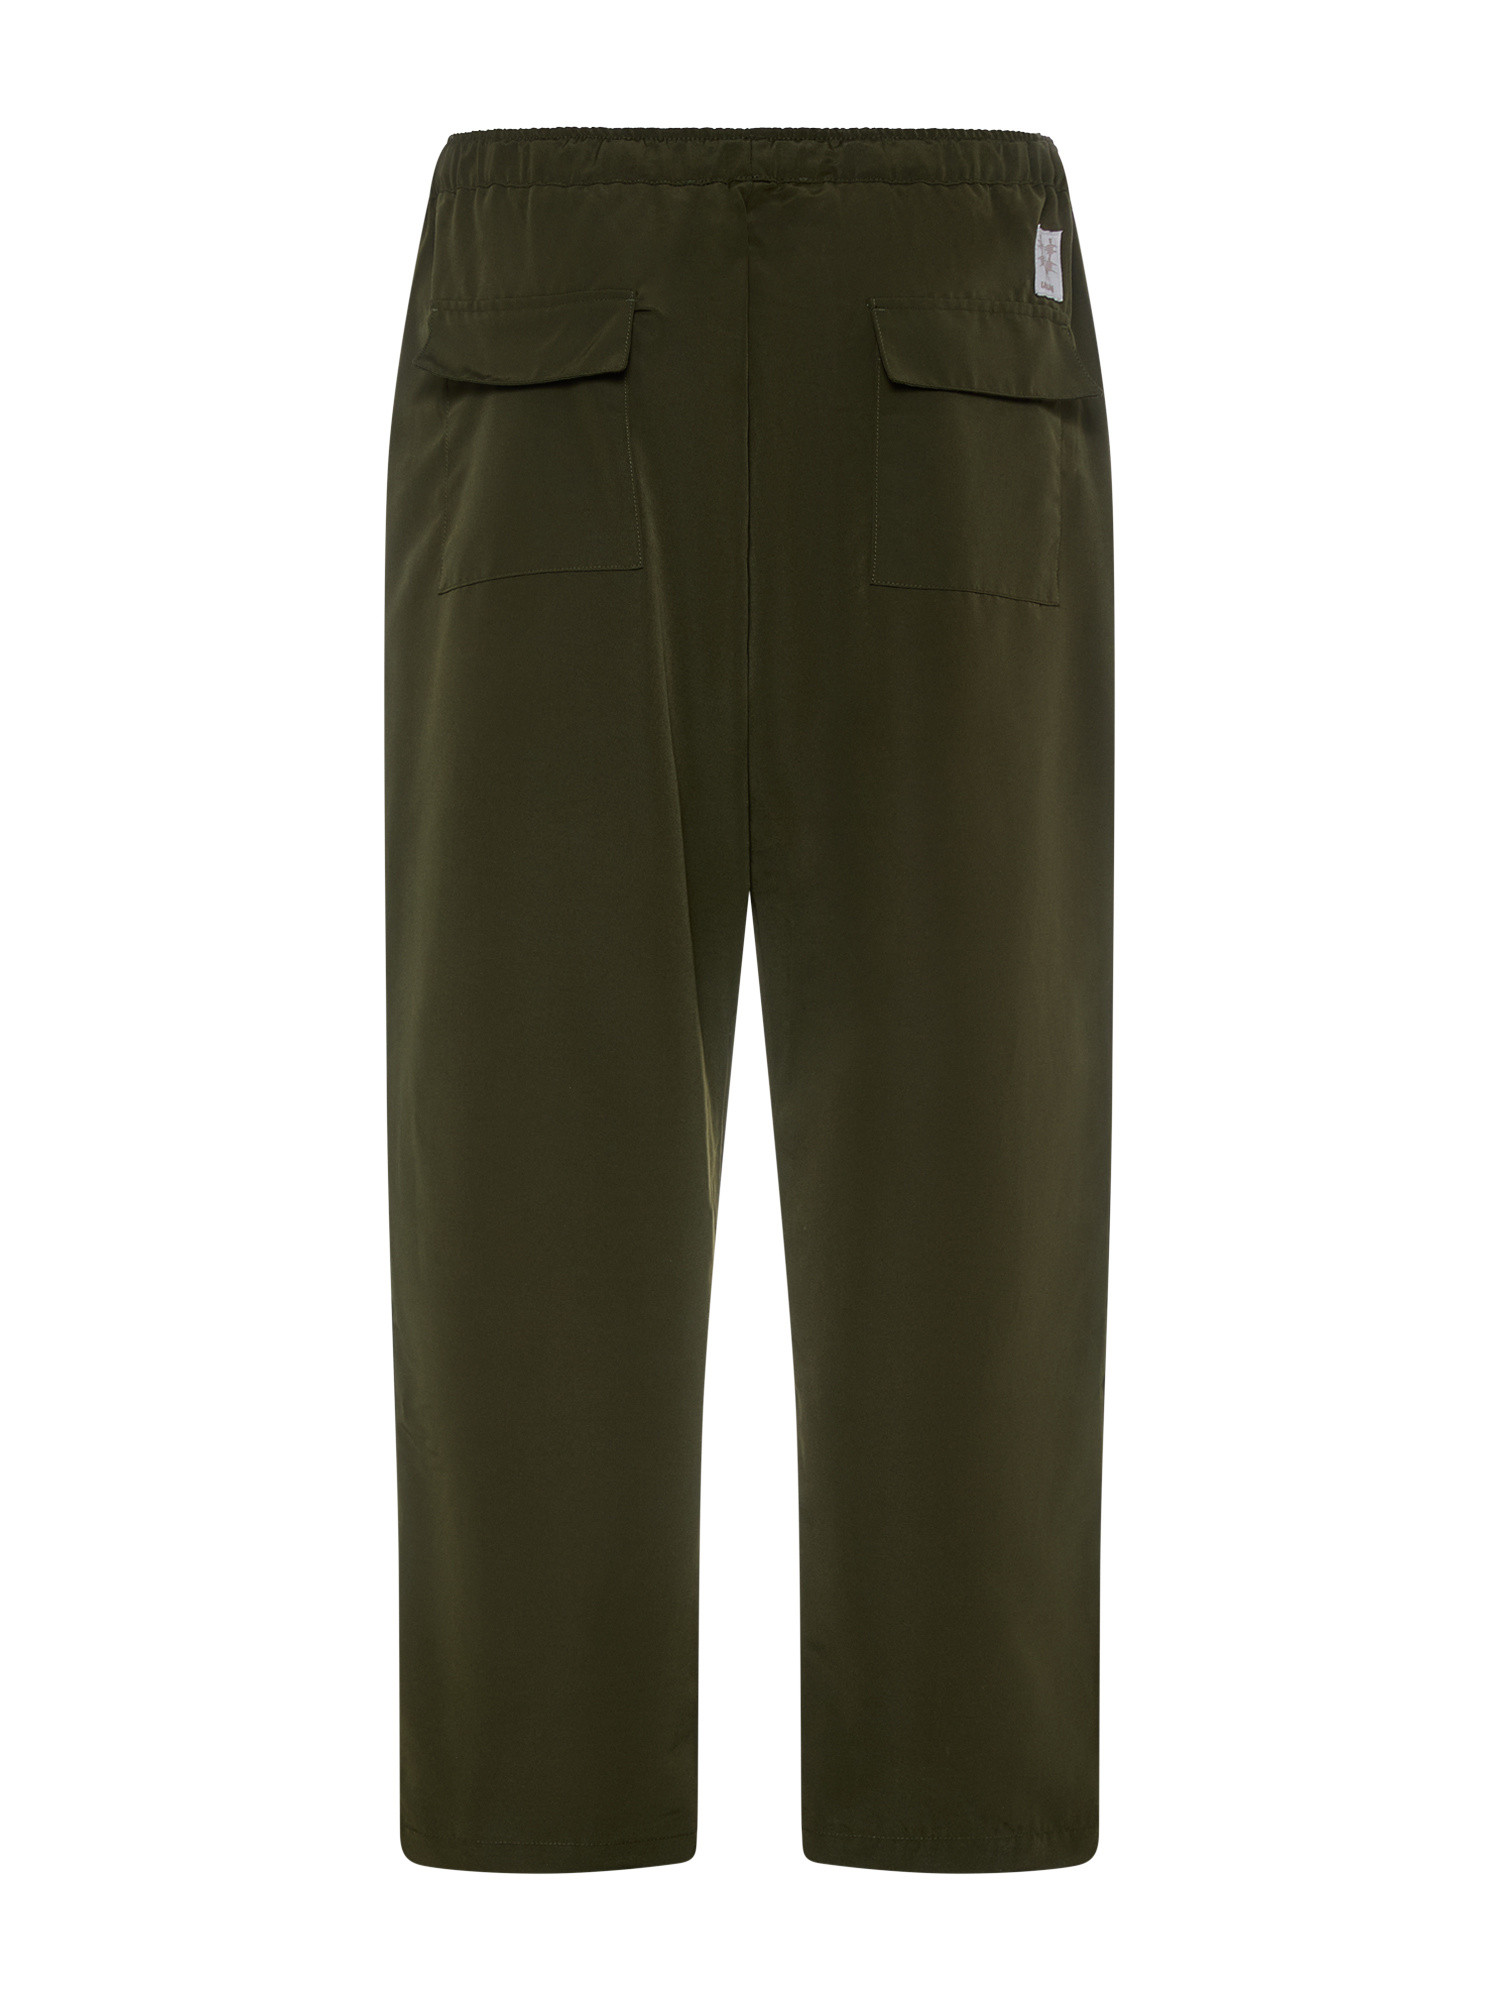 Usual - Dealer Pants, Dark Green, large image number 1